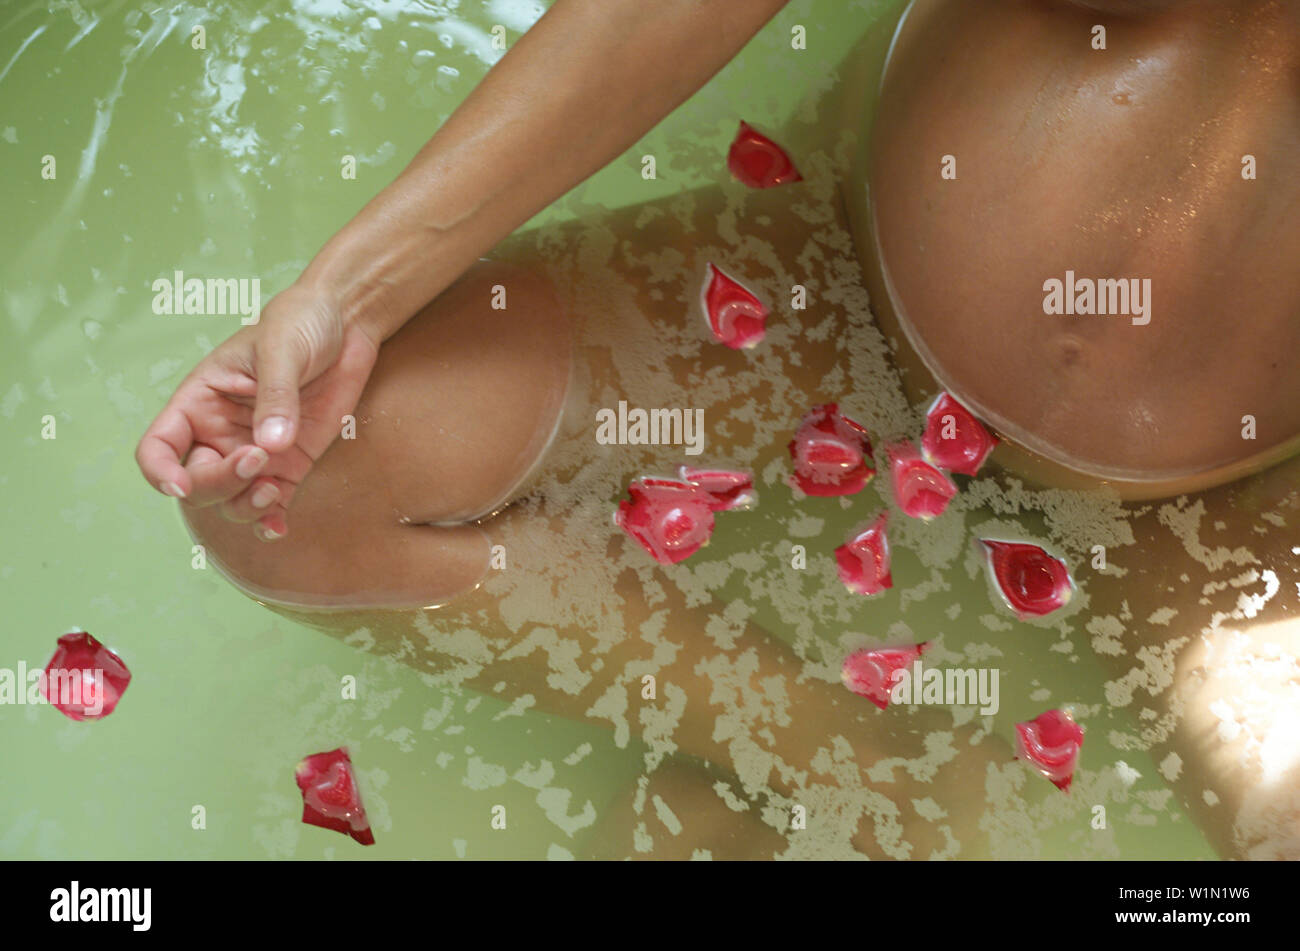 Pregnant woman takes a bath. Stock Photo by ©stasia04 253403156